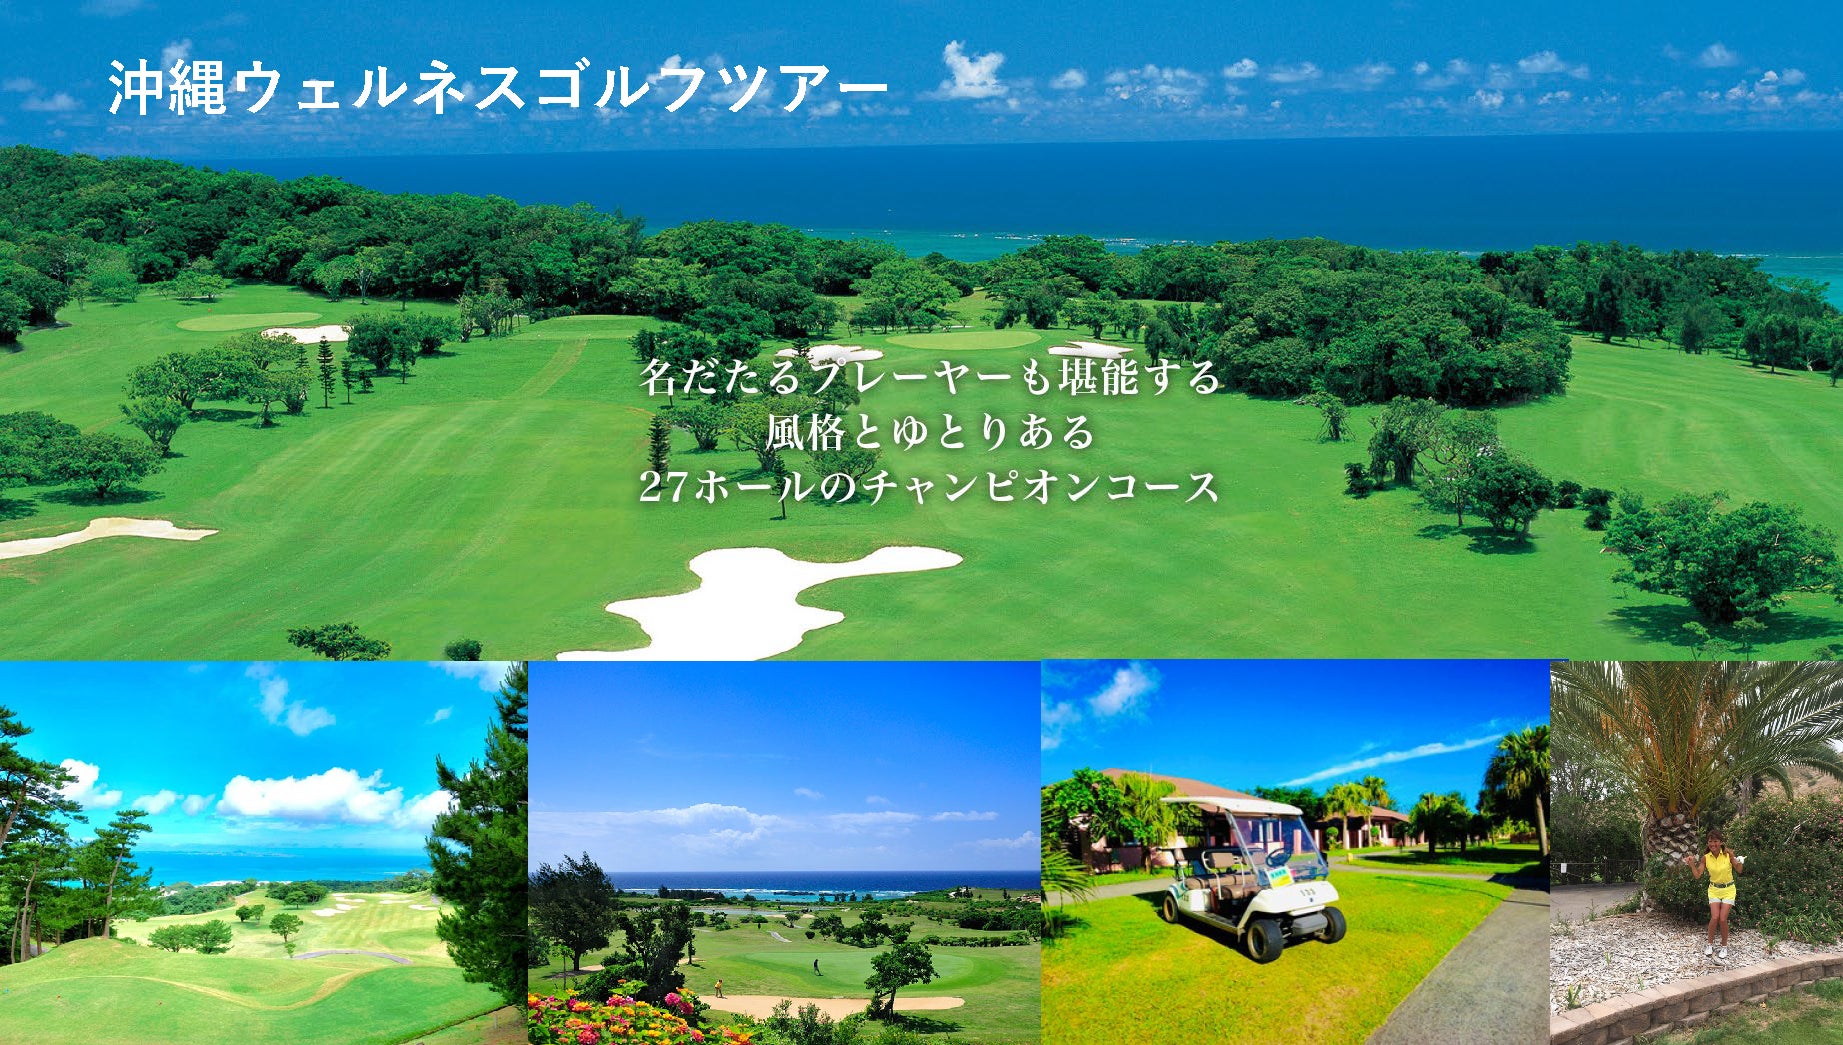 海を臨む名門ゴルフクラブ「琉球ゴルフ俱楽部」でプレイ！　沖縄ウェルネスゴルフツアー3日間 のツアーを発表いたします。ラウンドレッスン・参加特典付き！のサブ画像11